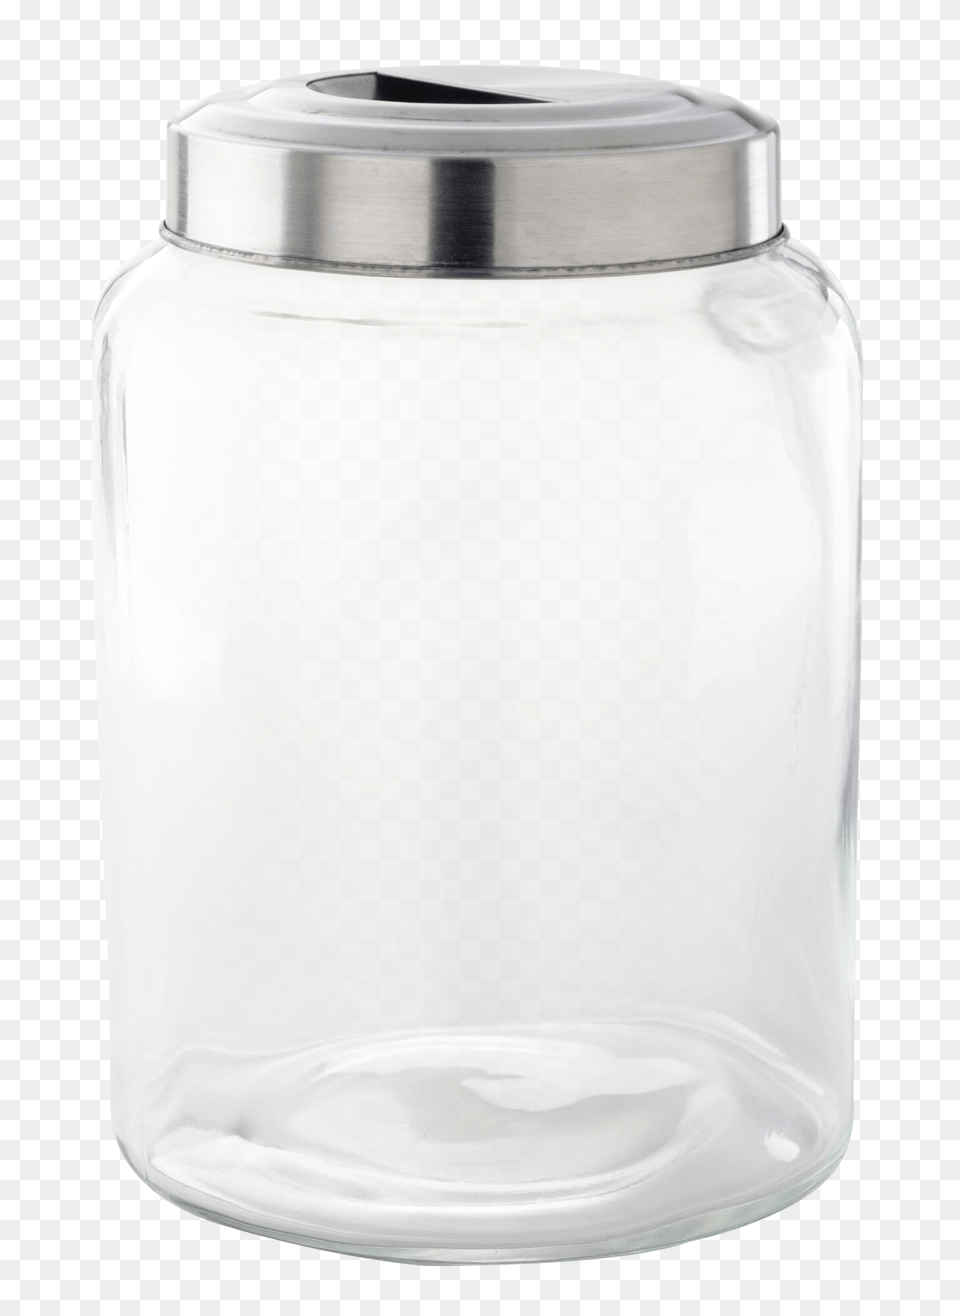 Pngpix Com Glass Jar Transparent Image, Bottle, Shaker, Pottery Free Png Download